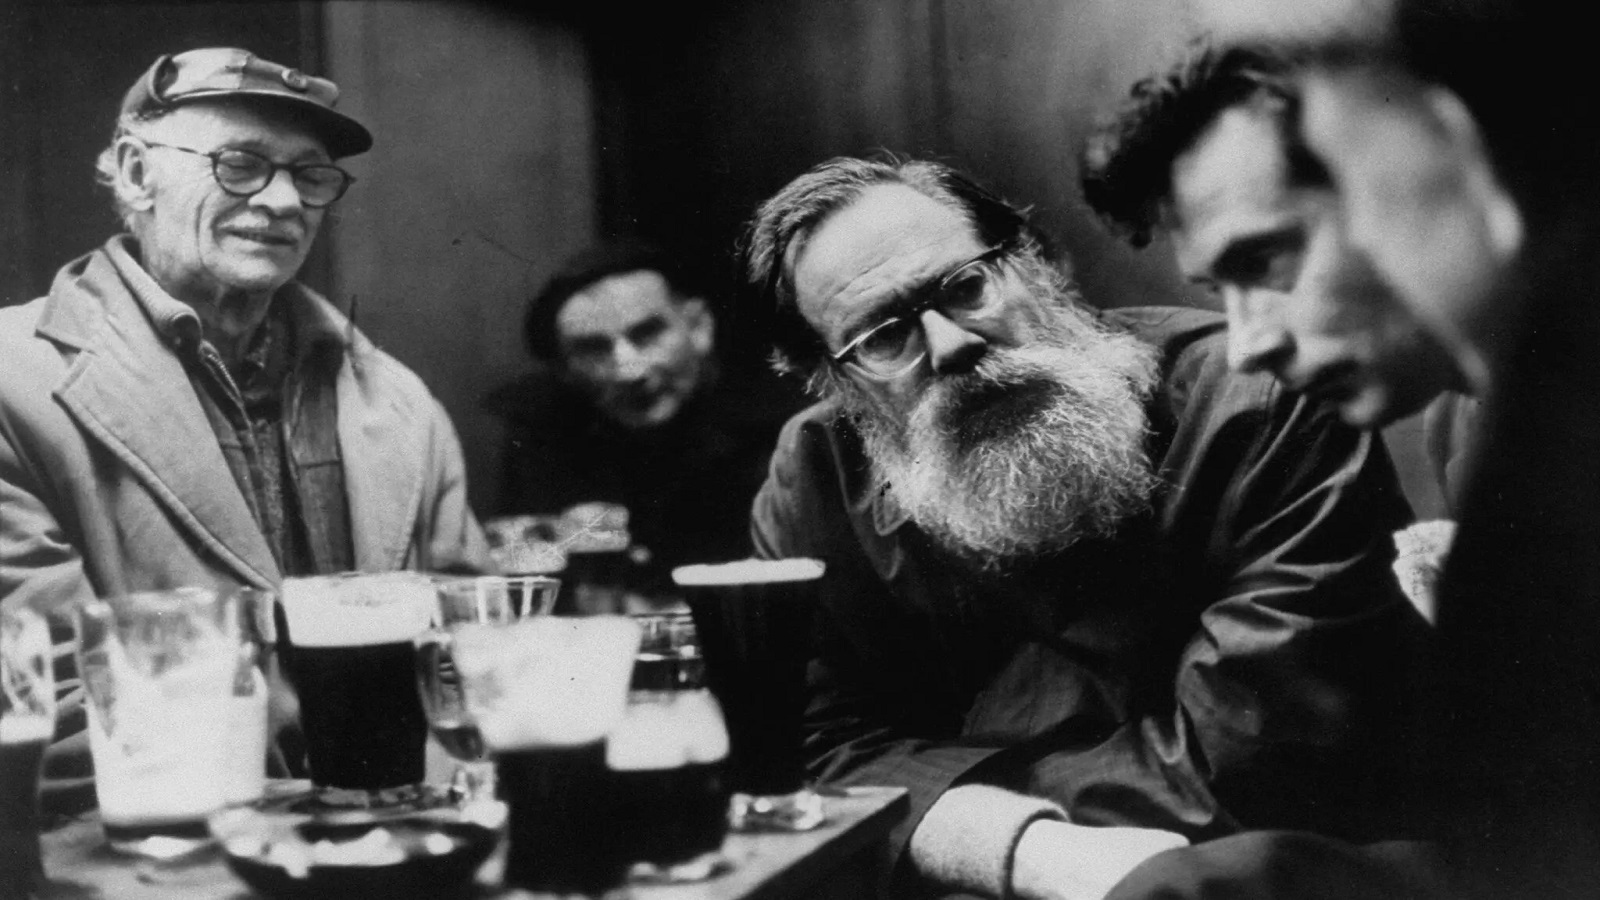 الشاعر جون بيريمان (في الوسط) في حانة في دبلن العام 1967